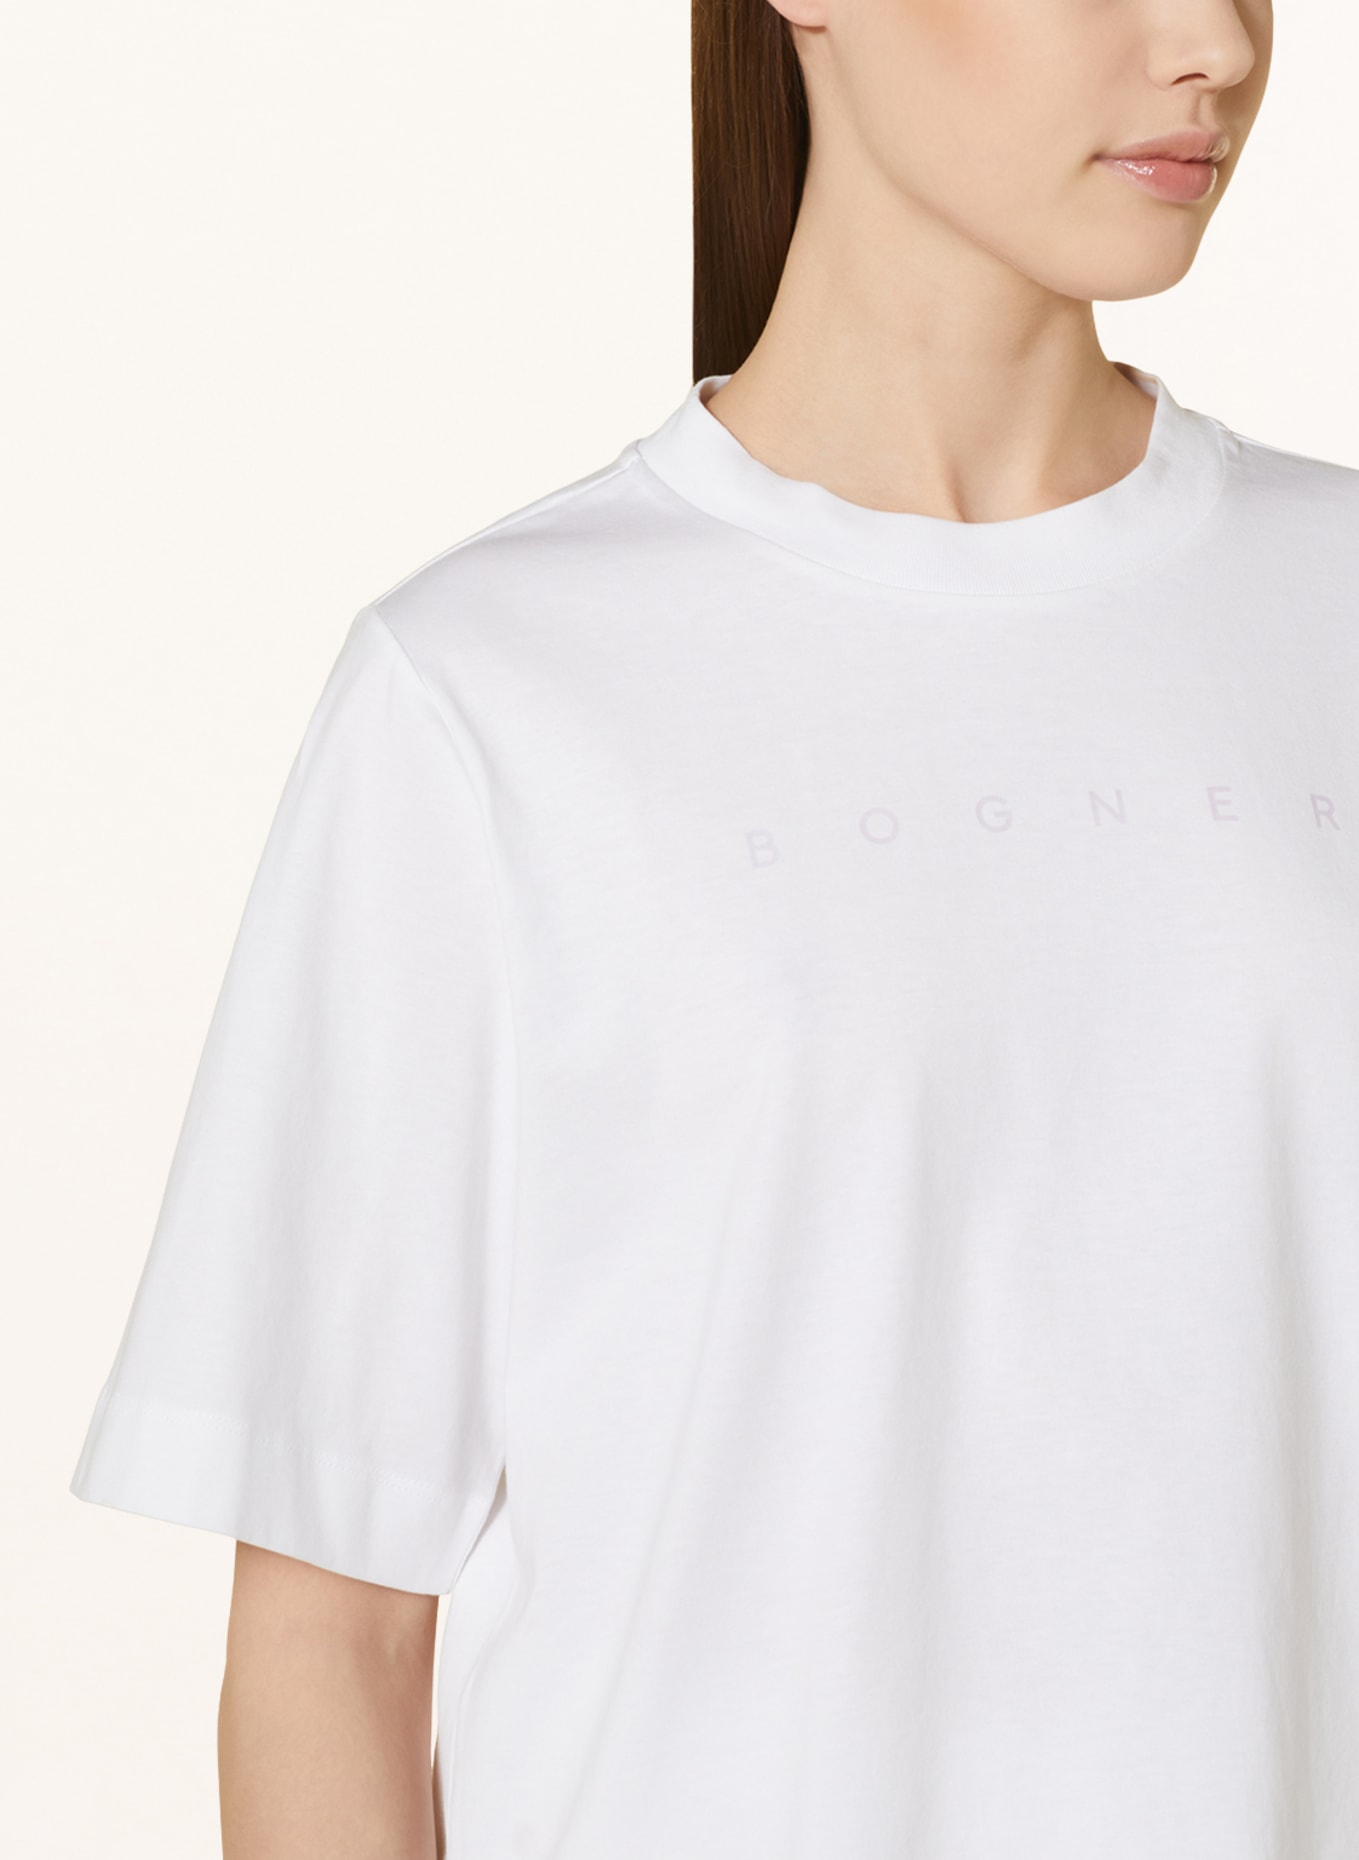 BOGNER T-shirt DOROTHY, Color: WHITE (Image 4)